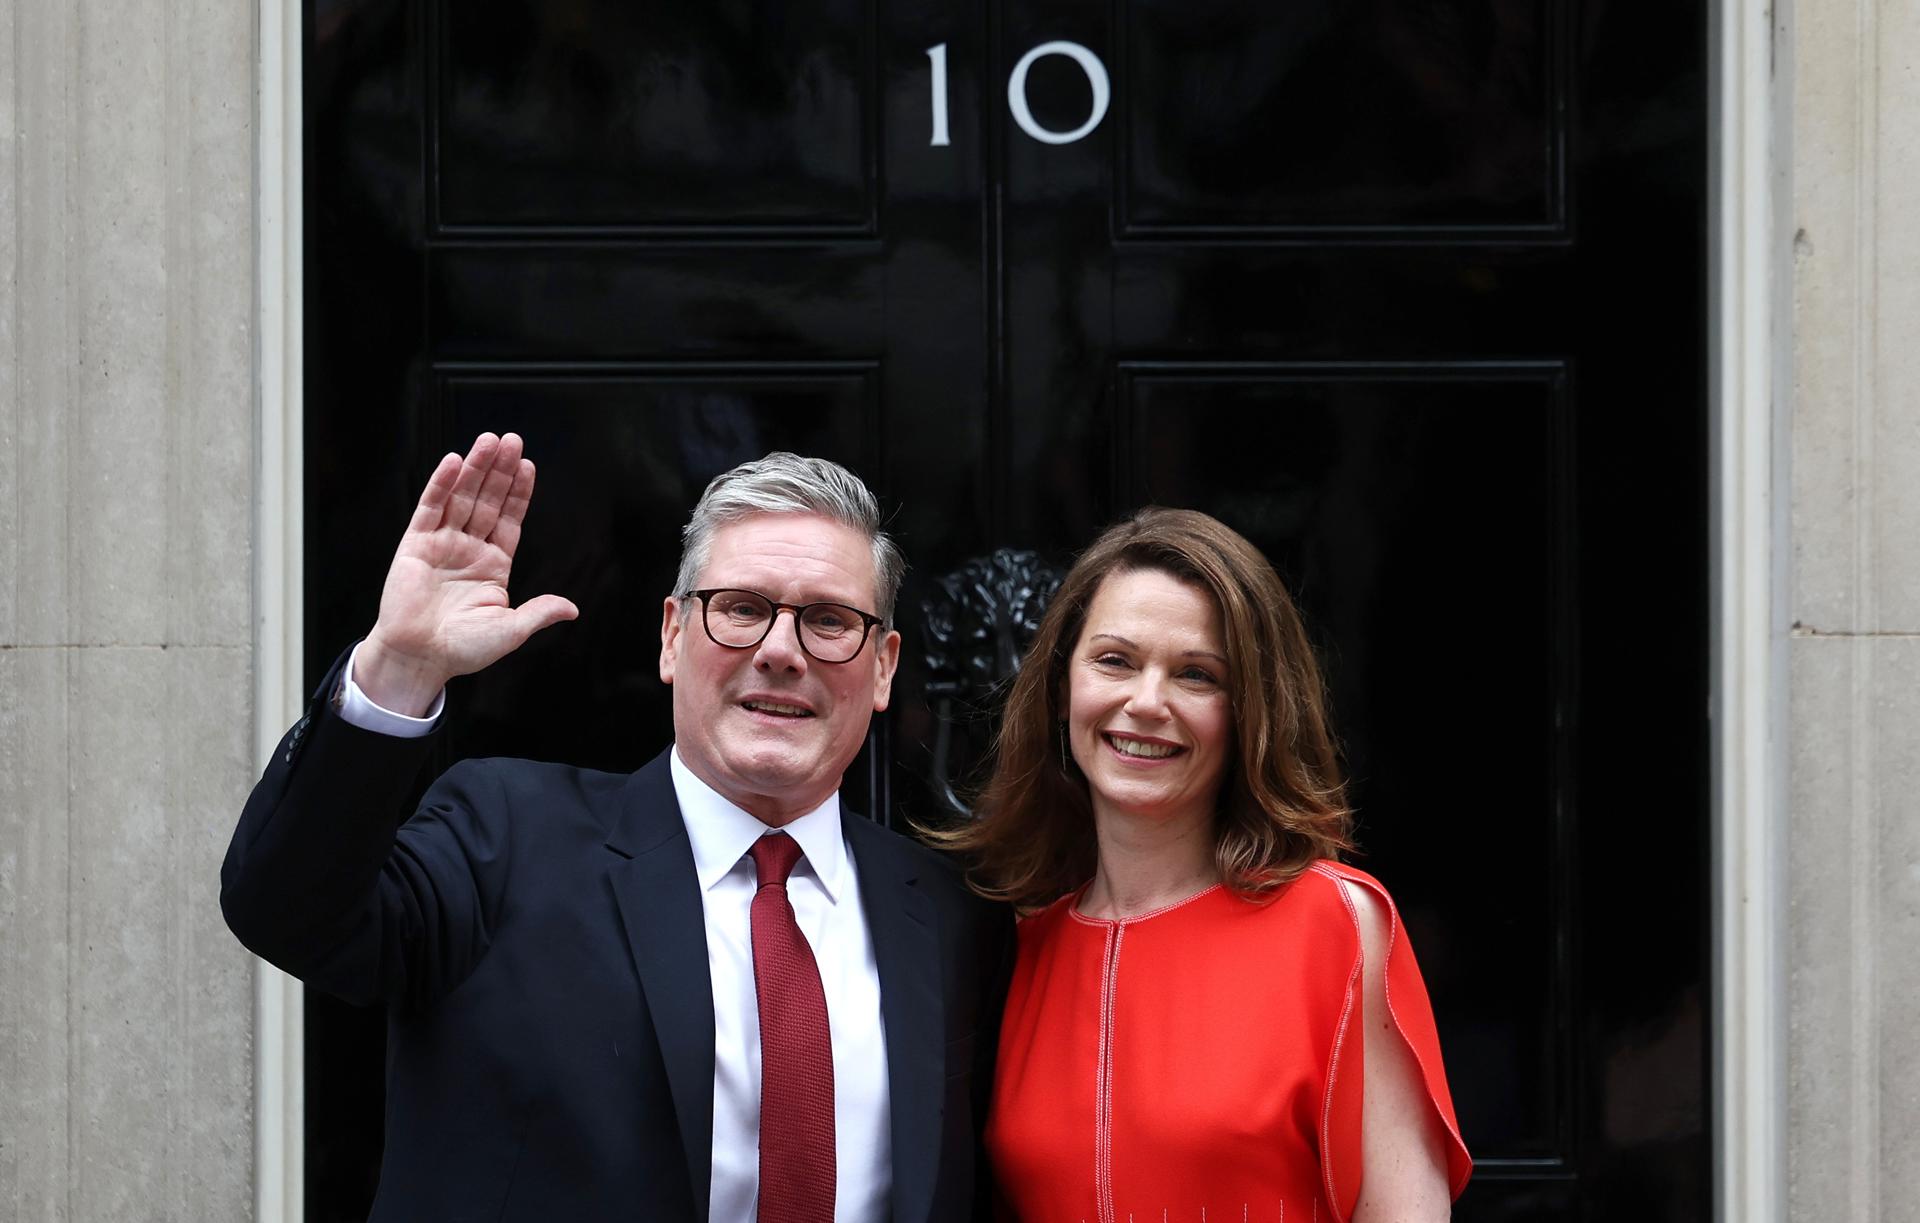 El nuevo Primer Ministro de Gran Bretaña, Keir Starmer (L), y su esposa Victoria Starmer, saludan a los medios de comunicación en las escaleras del número 10 de Downing Street en Londres, Gran Bretaña, 05 de julio de 2024. El líder del Partido Laborista, Keir Starmer, se convirtió en el nuevo primer ministro del país el 5 de julio, después de que su partido obtuviera una victoria aplastante en las elecciones generales. (Elecciones, desplazamiento de tierras, Reino Unido, Londres) EFE/EPA/ANDY LLUVIA
